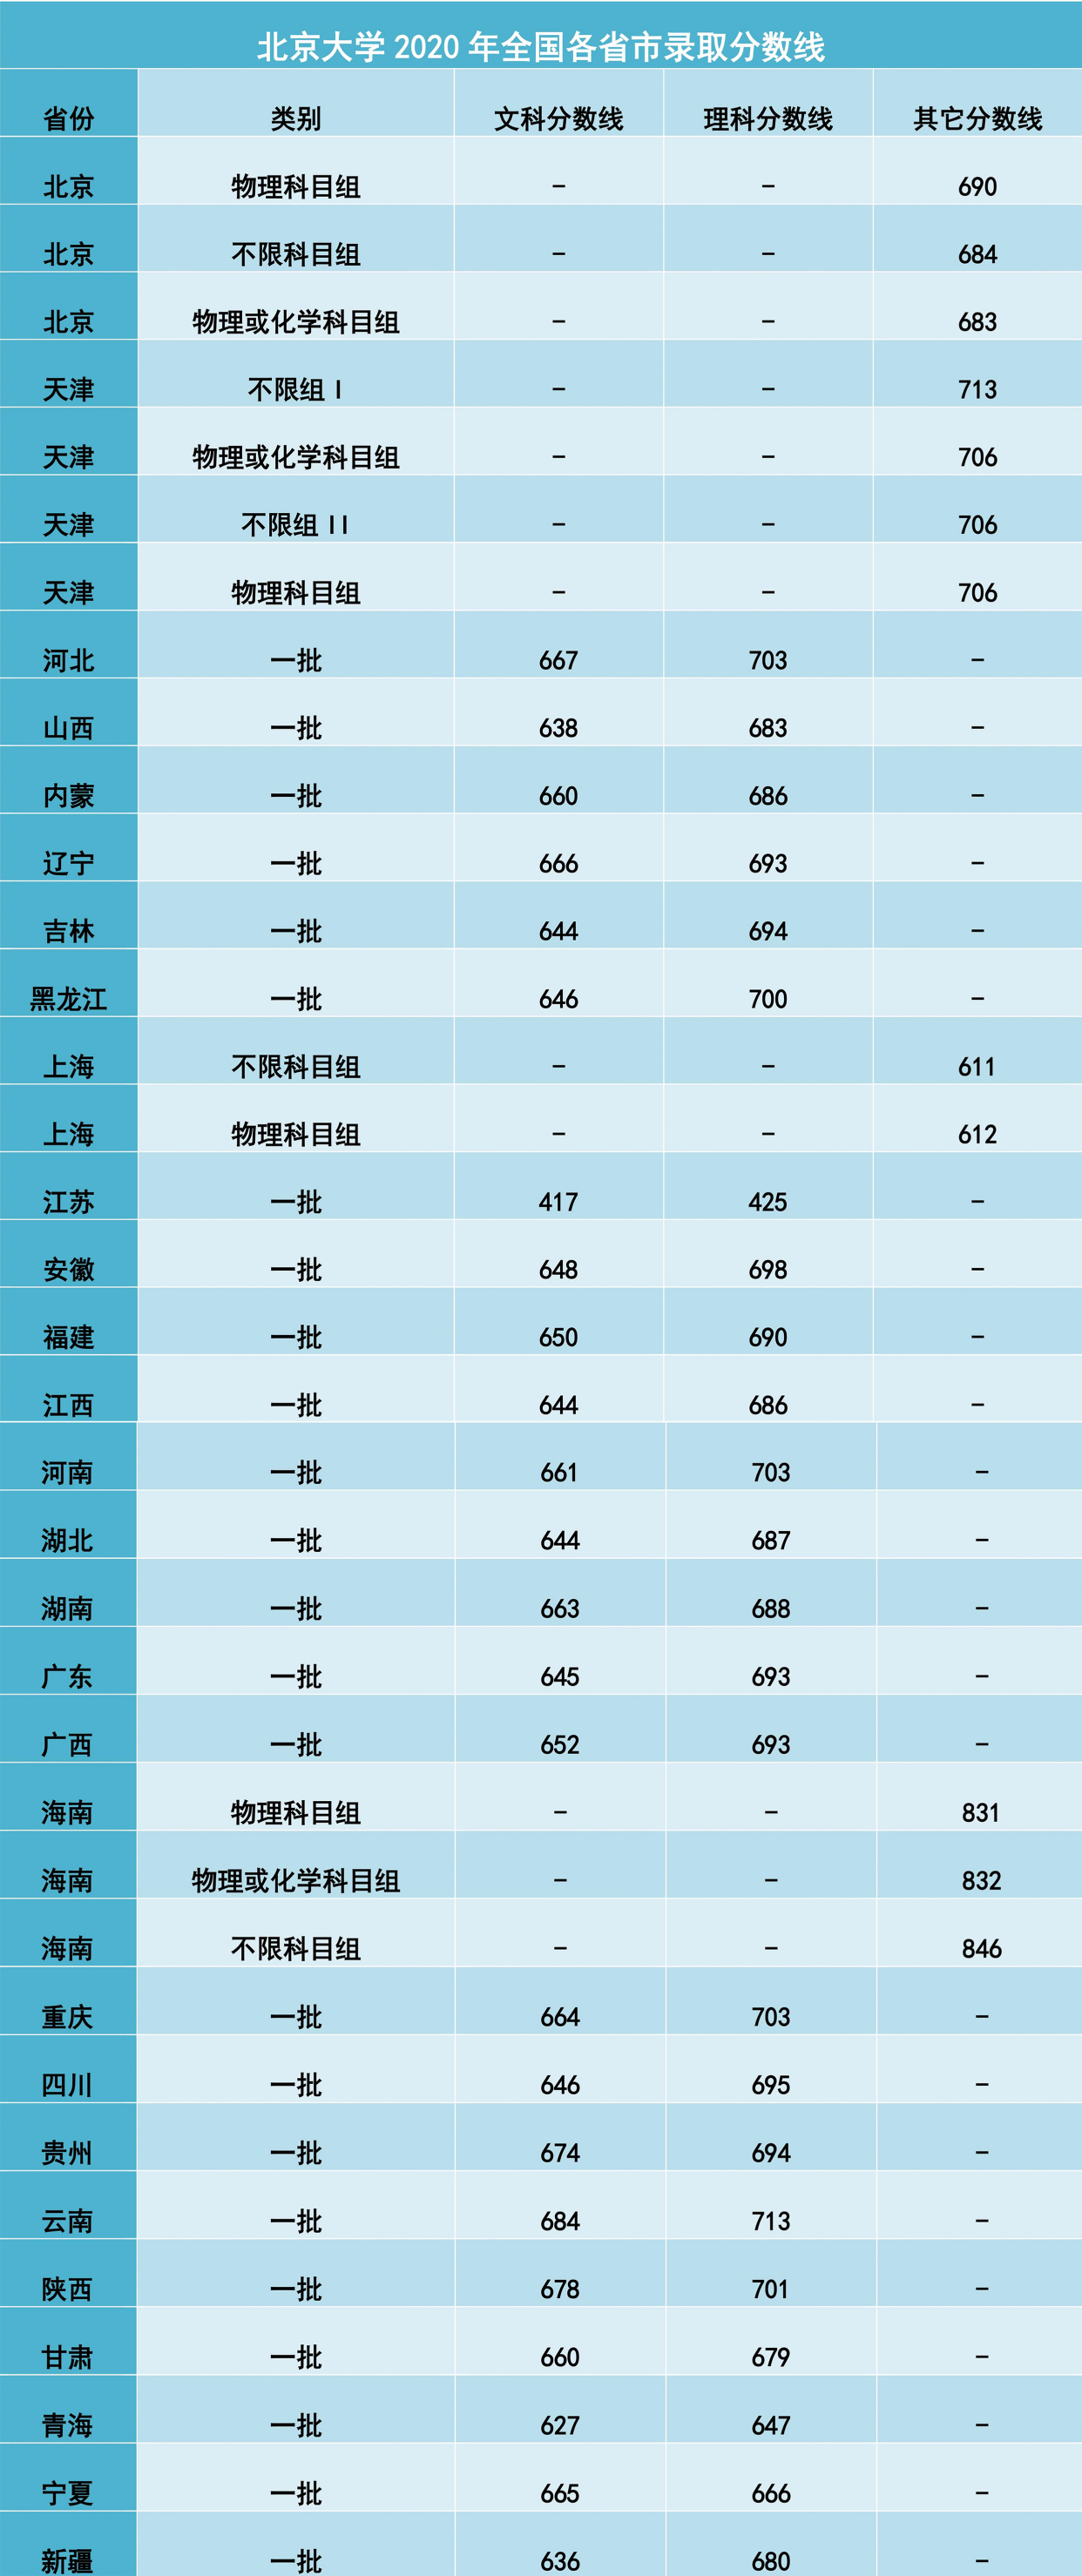 录取分数线再创新高,7地区超700分,北京大学2020年分数线公布!